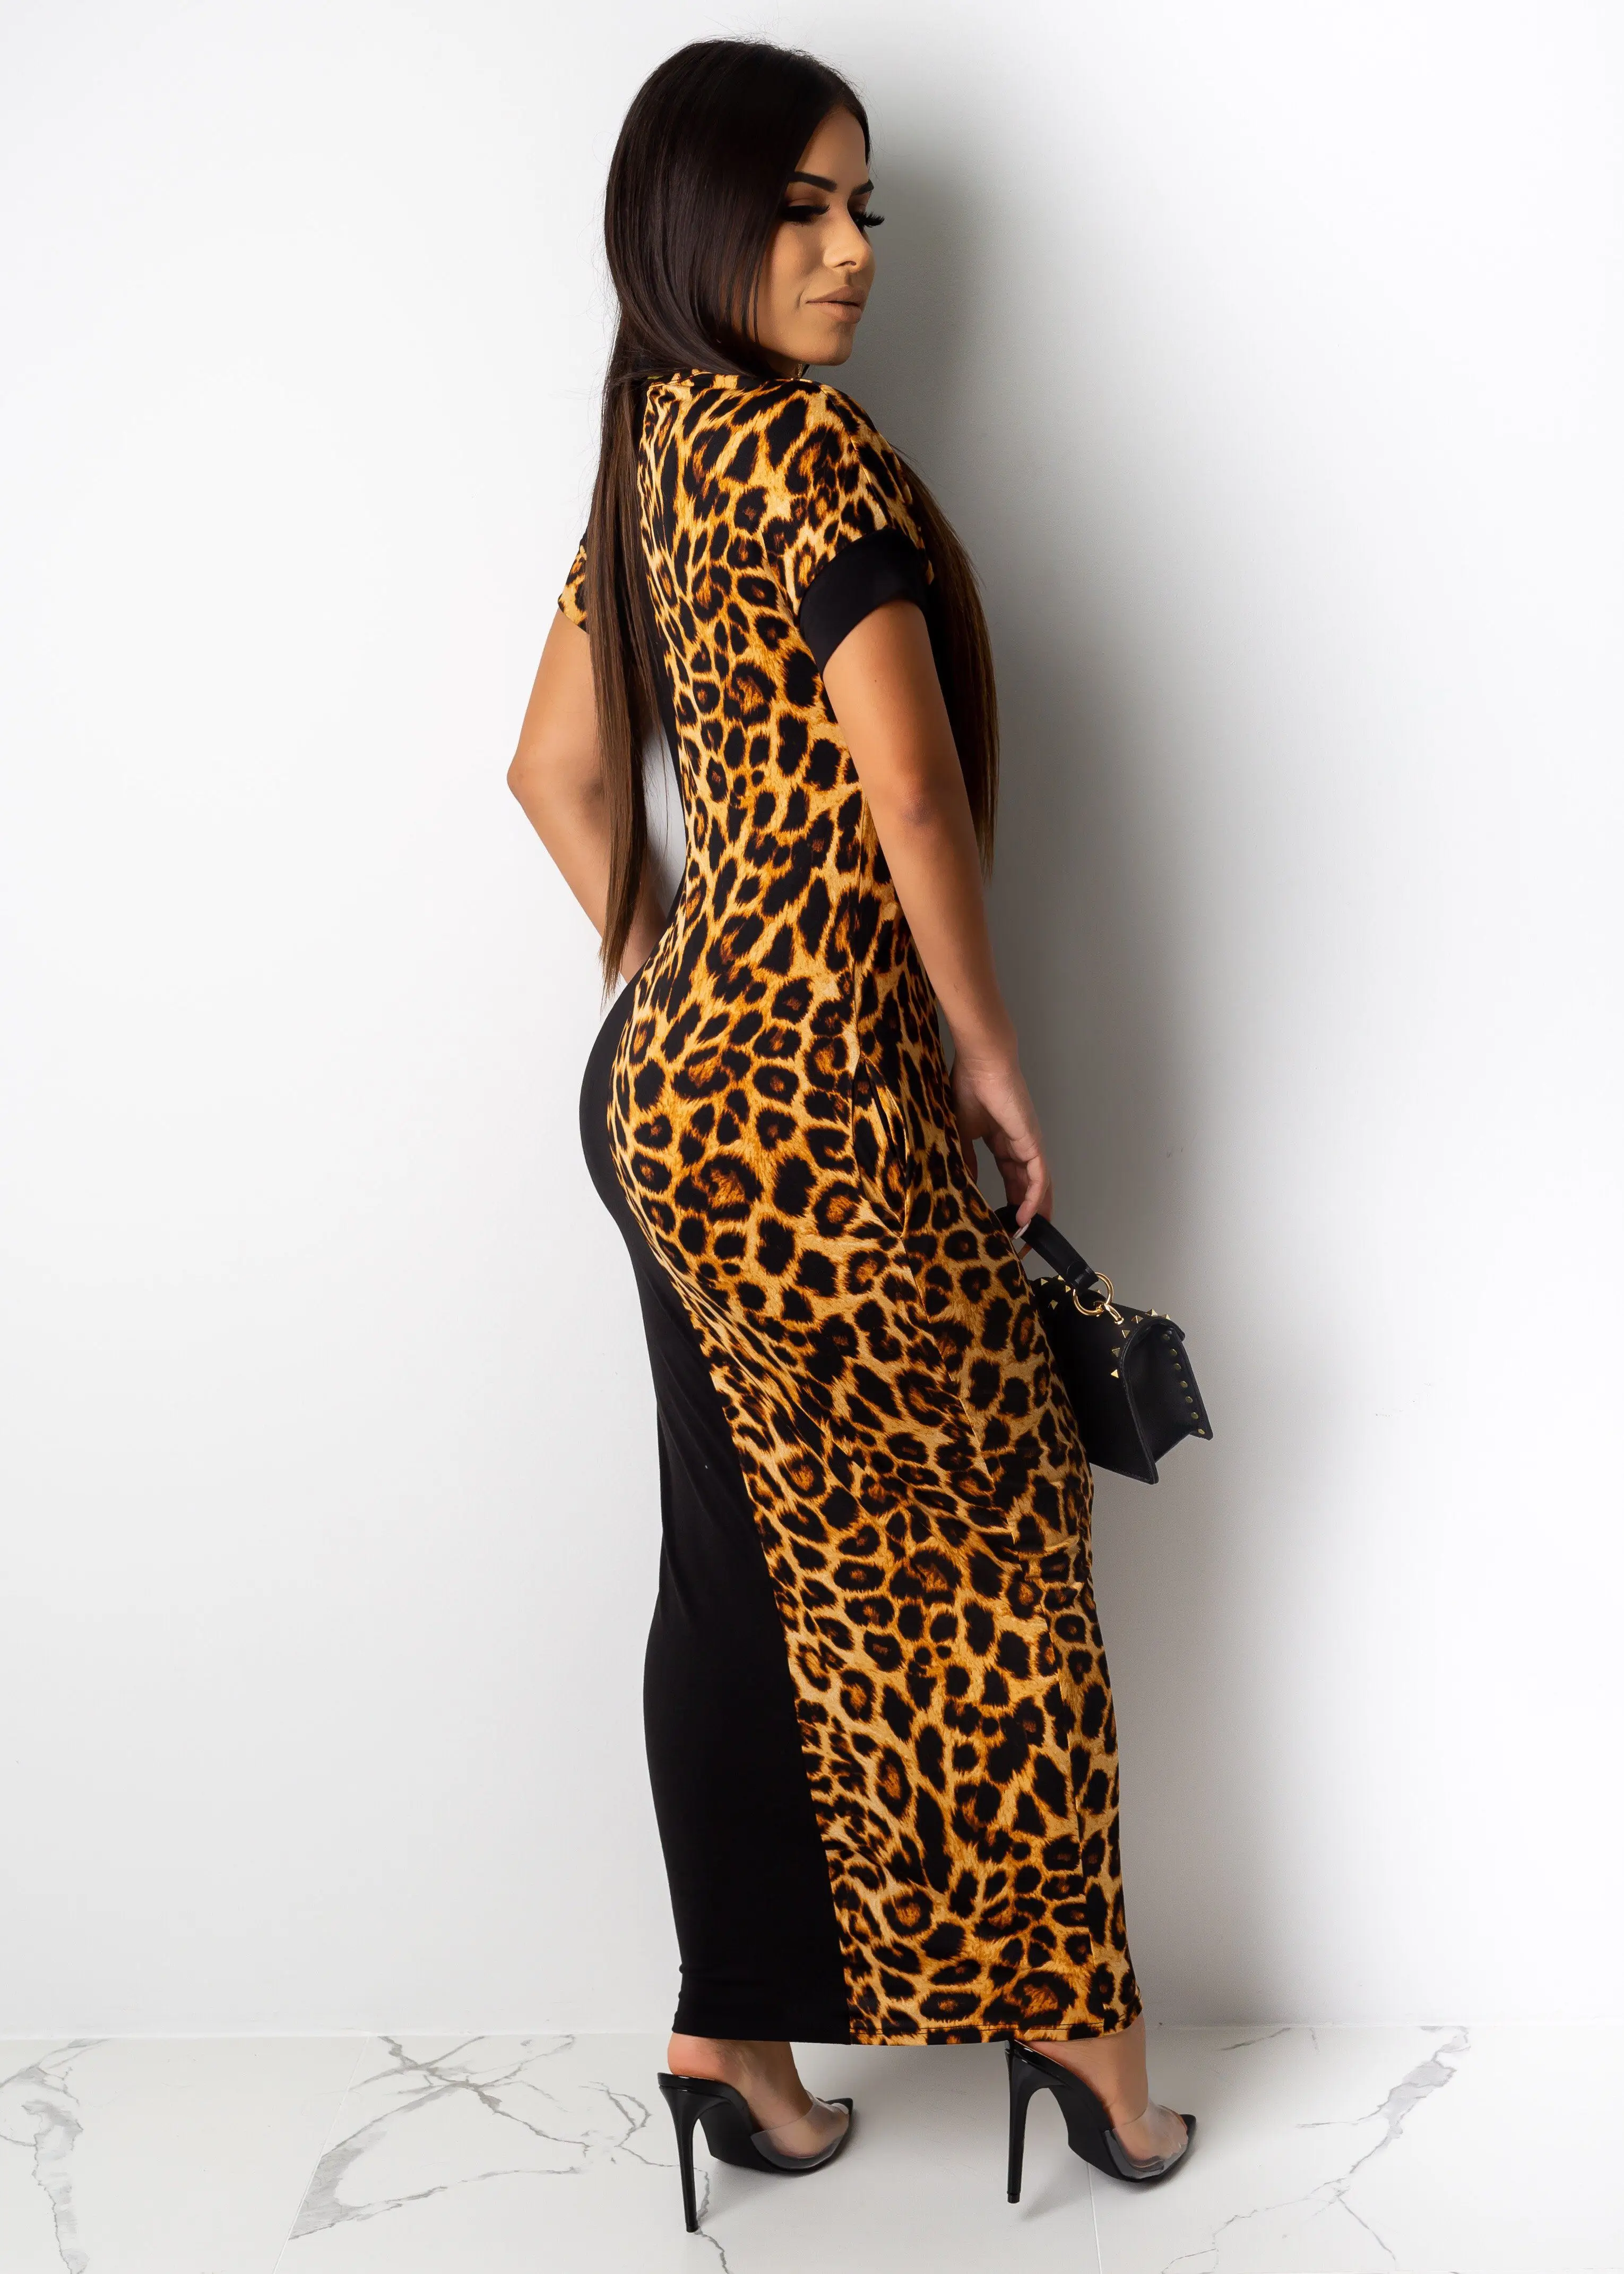 Осень Лето Женское модное леопардовое платье бодикон Длинное Платье Макси сексуальное Клубное вечернее платье vestidos размера плюс GLLD8600